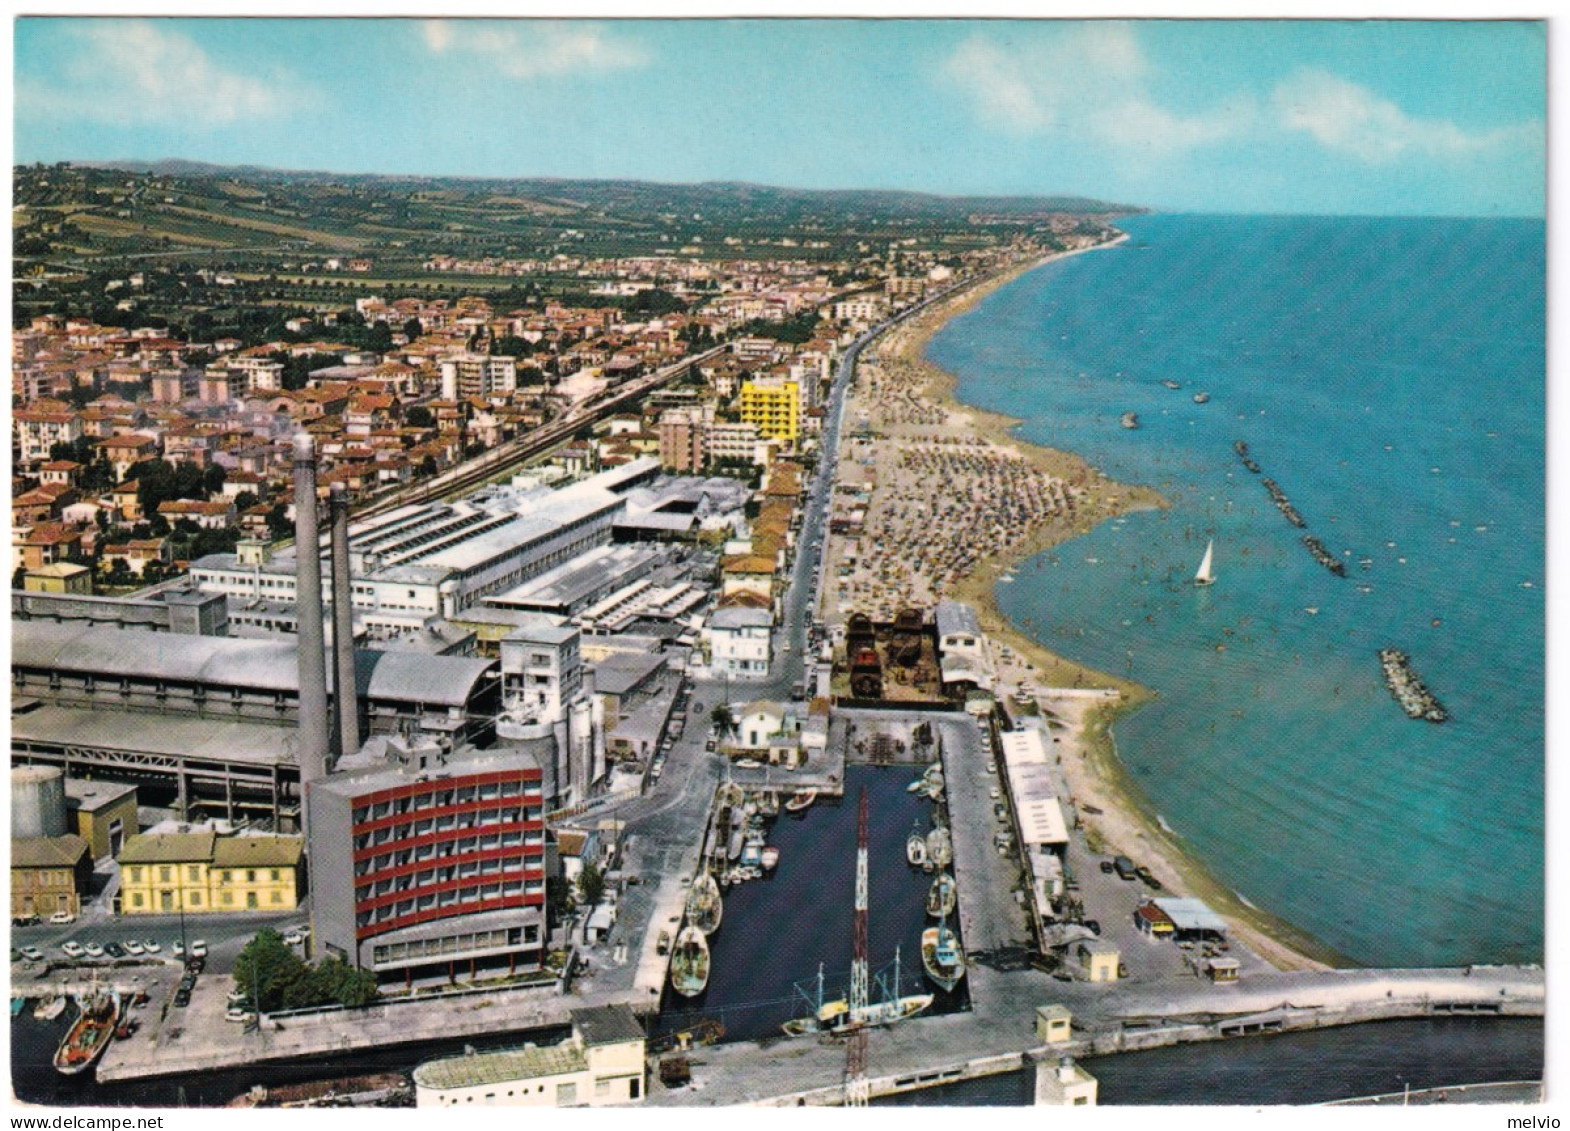 1979-SENIGALLIA Veduta Aerea Viaggiata Affrancata Giornata Francobollo '78 Lire  - Ancona